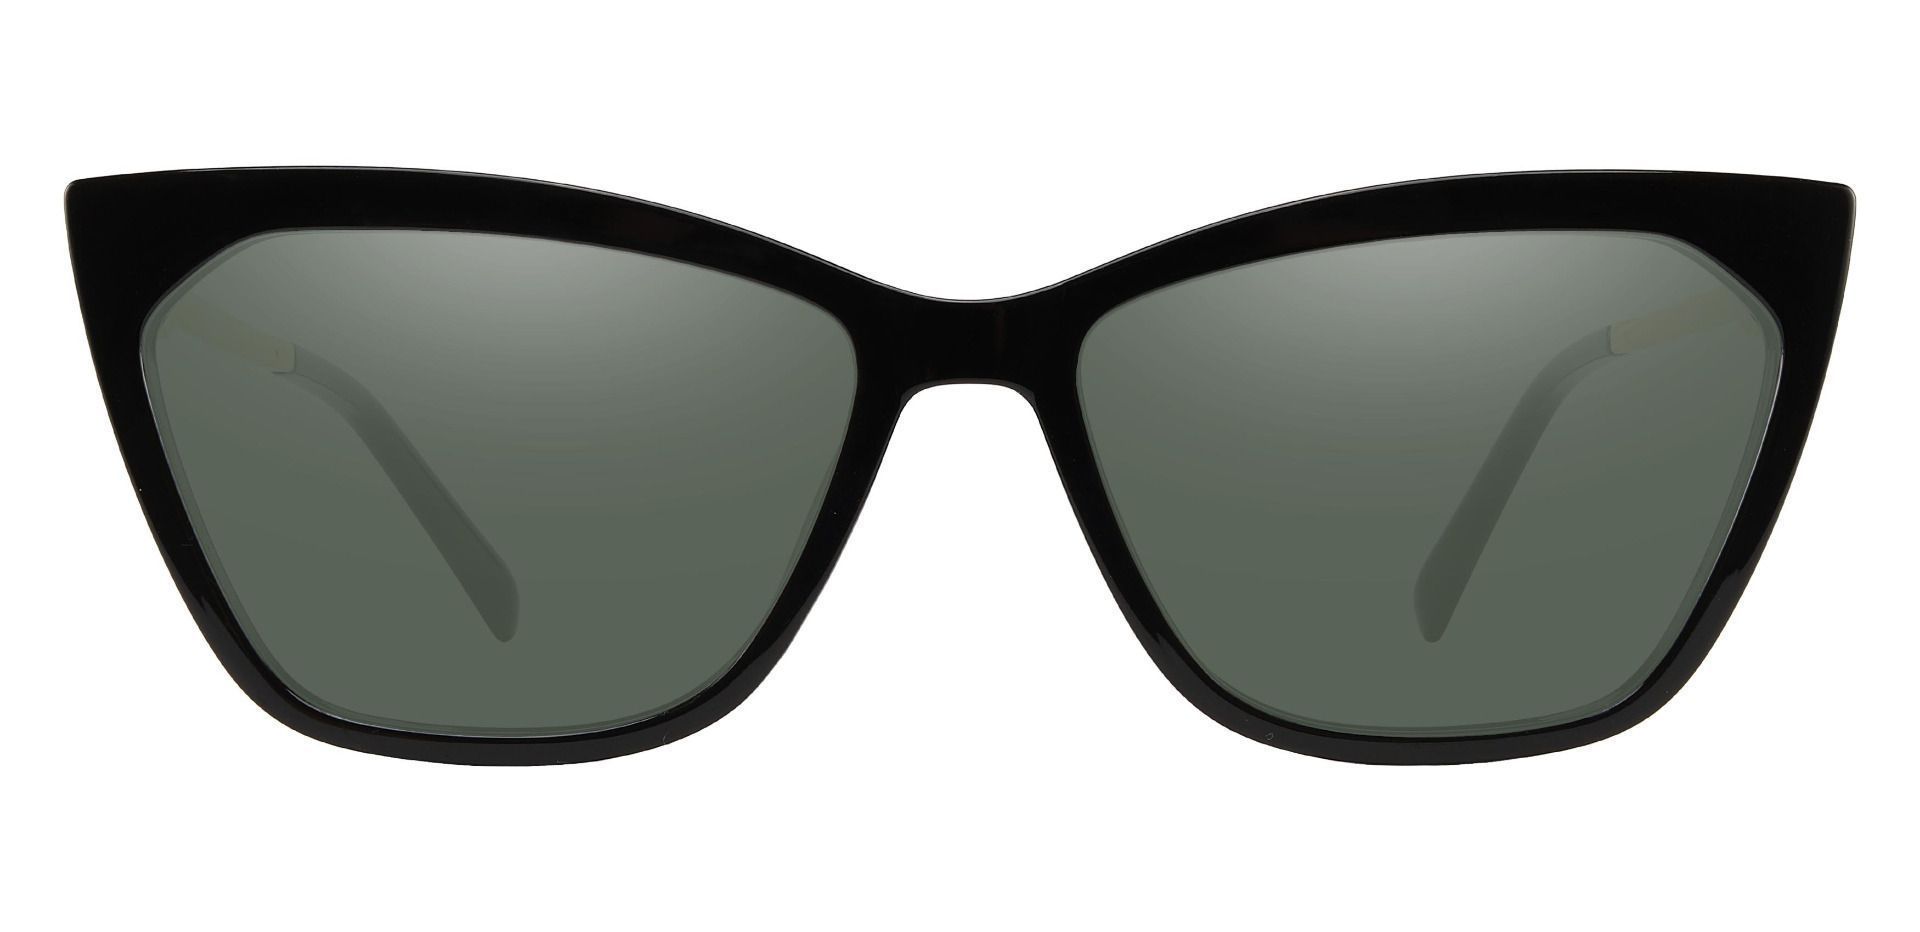 Addison Cat Eye Prescription Sunglasses - Black Frame With Green Lenses